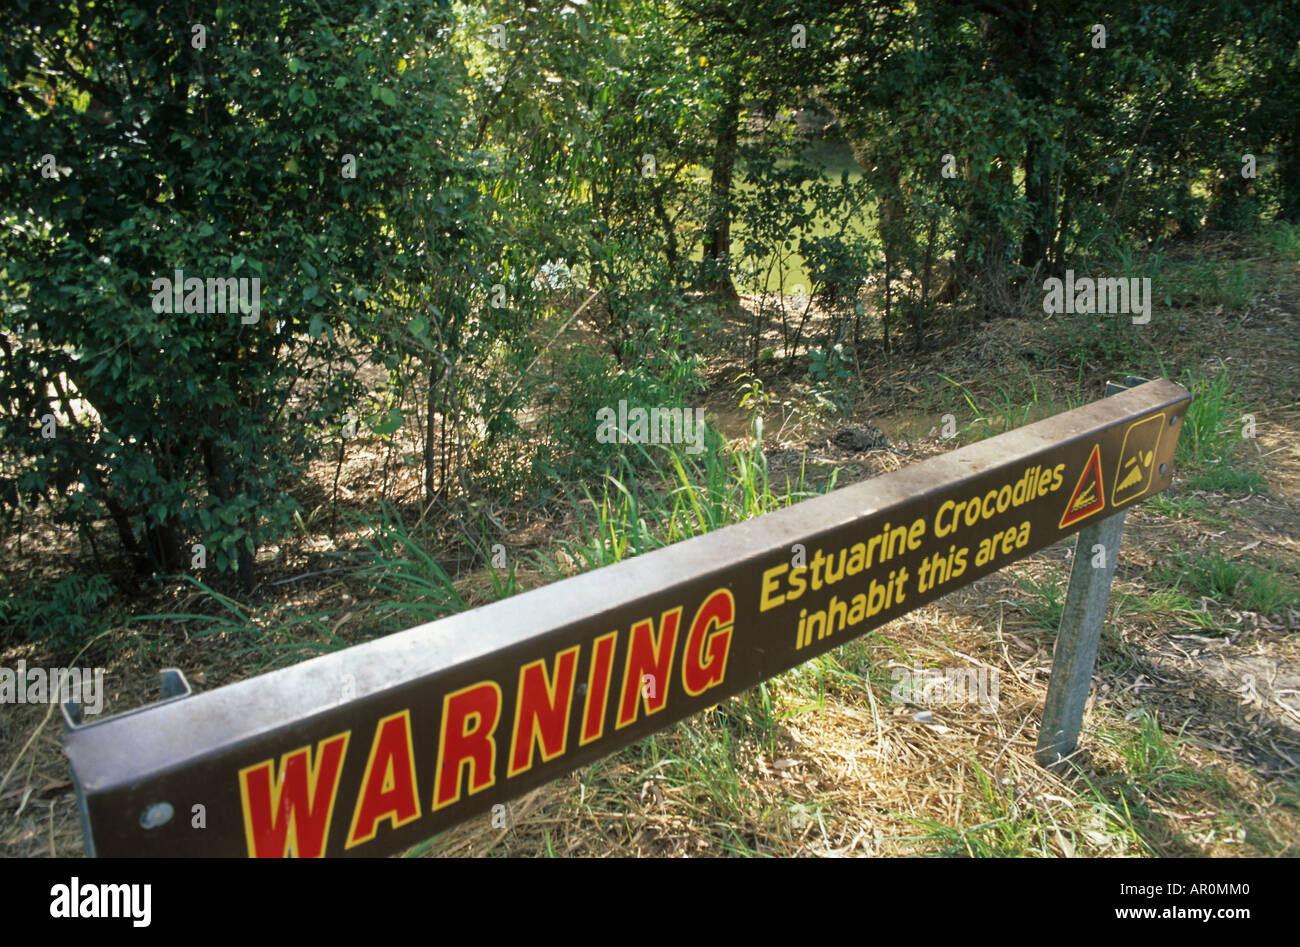 Señal de advertencia, el Cocodrilo Australien, Australia, nt señal de advertencia sobre la playa como los cocodrilos estuarinos infestan el golfo de la Carpa Foto de stock